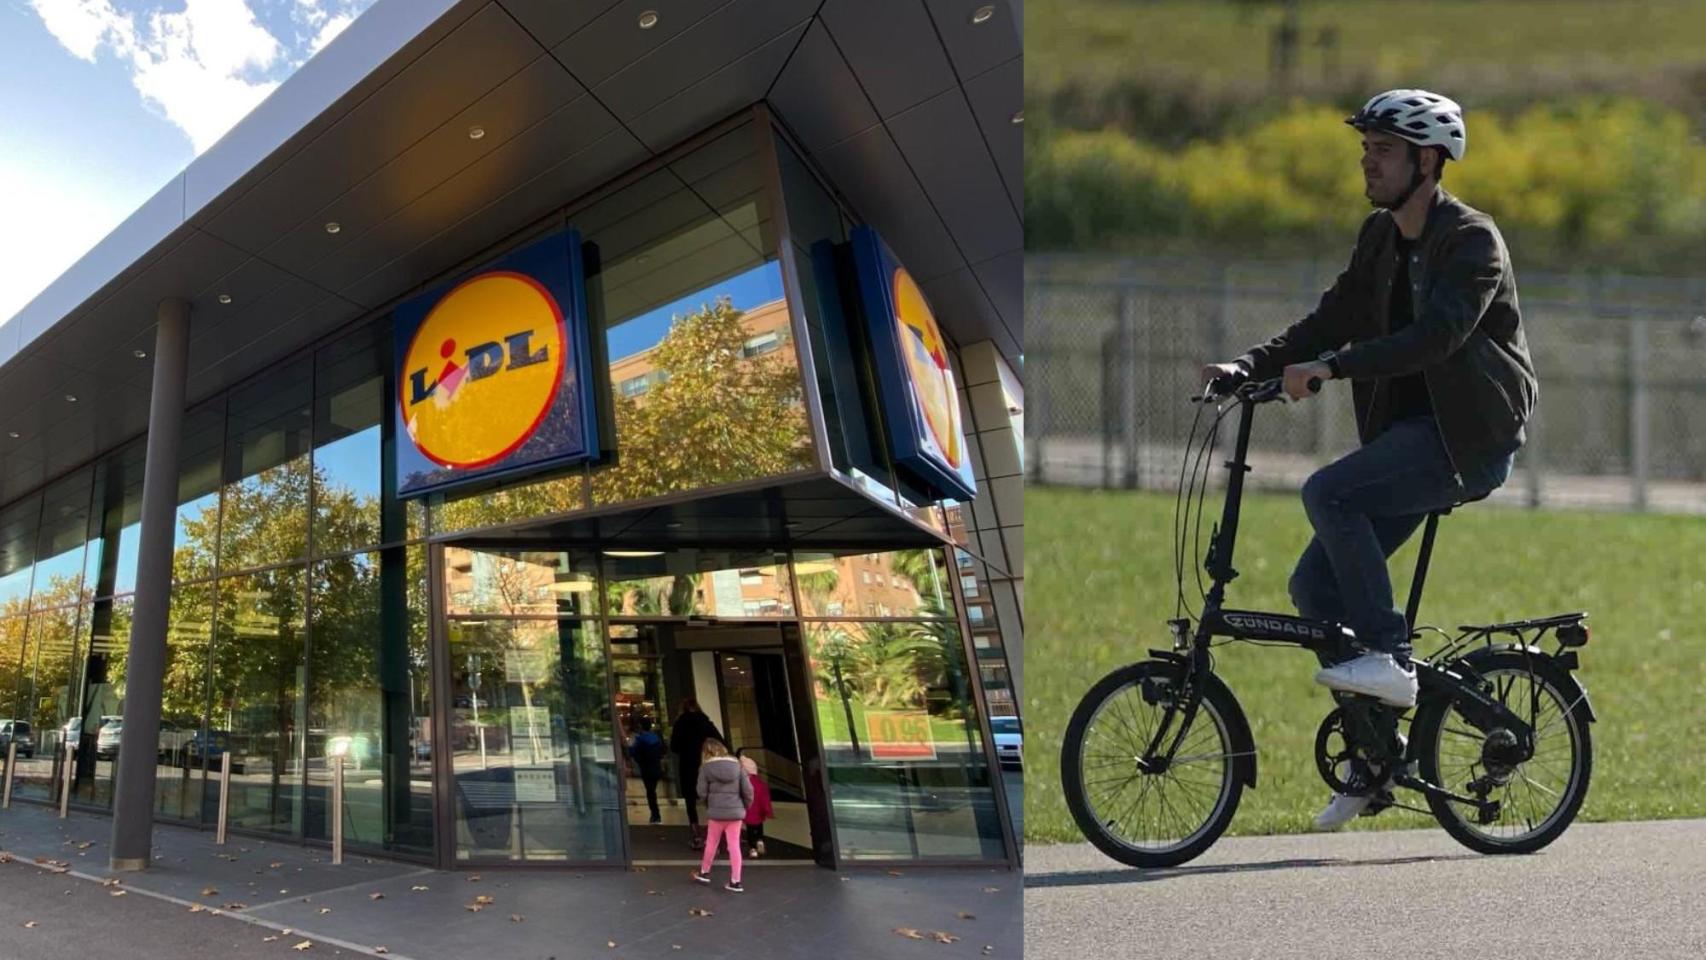 Supermercado de Lidl y la bicicleta plegable más vendida.